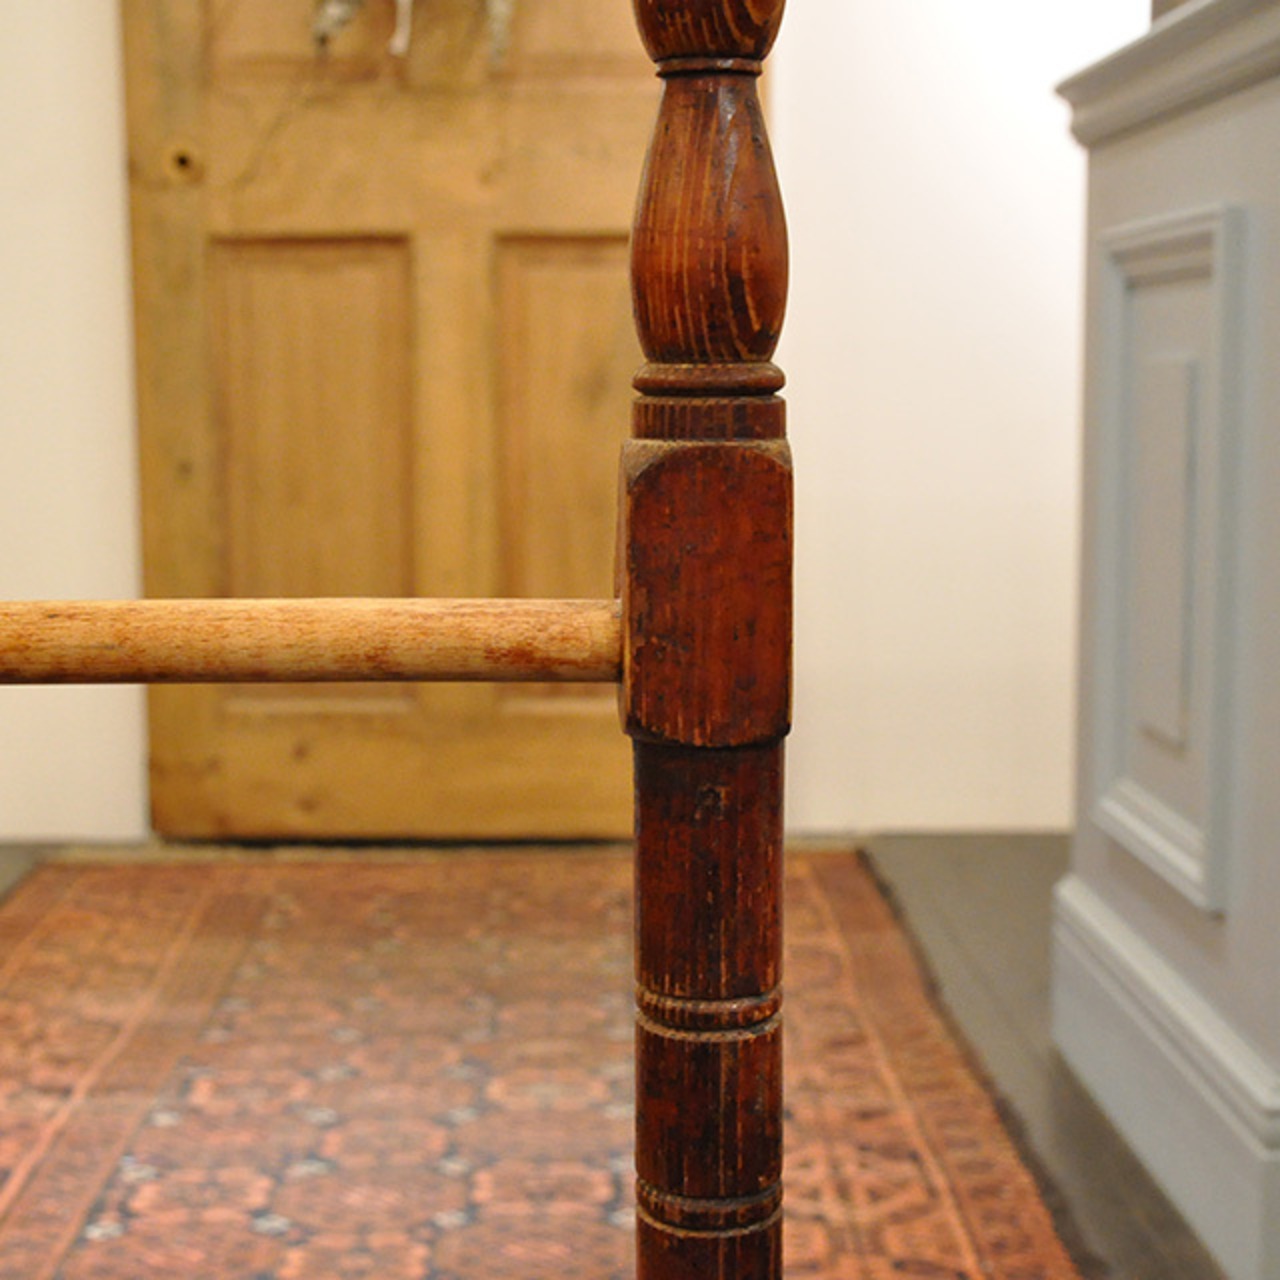 Wooden Towel Rack  / ウッド タオルラック / 1911-0256